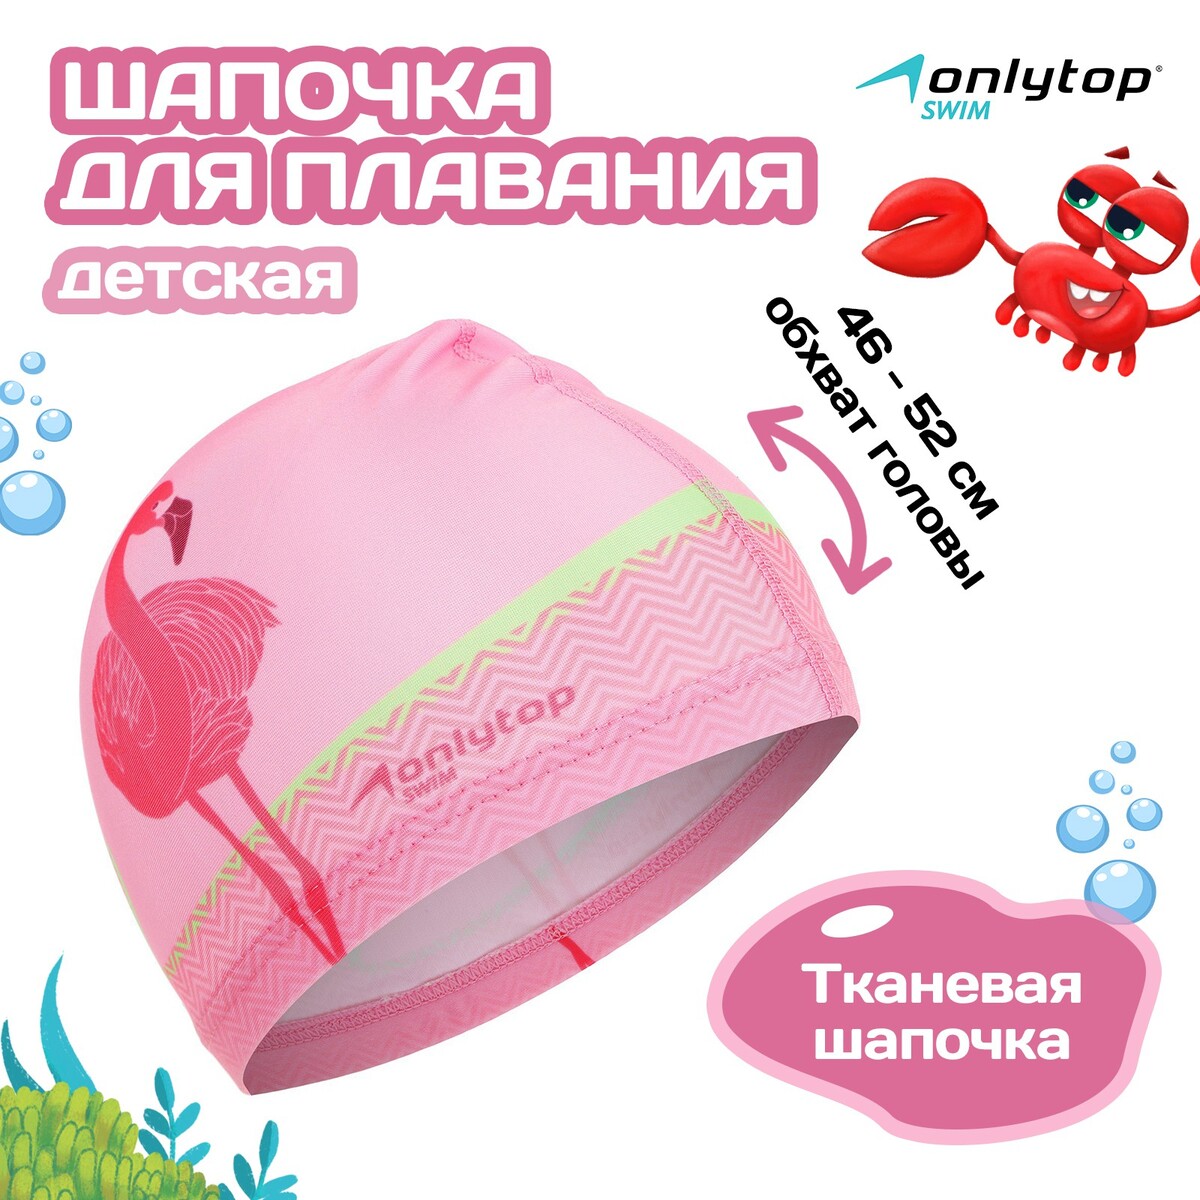 Шапочка для плавания детская onlytop детская зубная электрическая щетка brush baby kidzsonic фламинго от 3 лет brb193